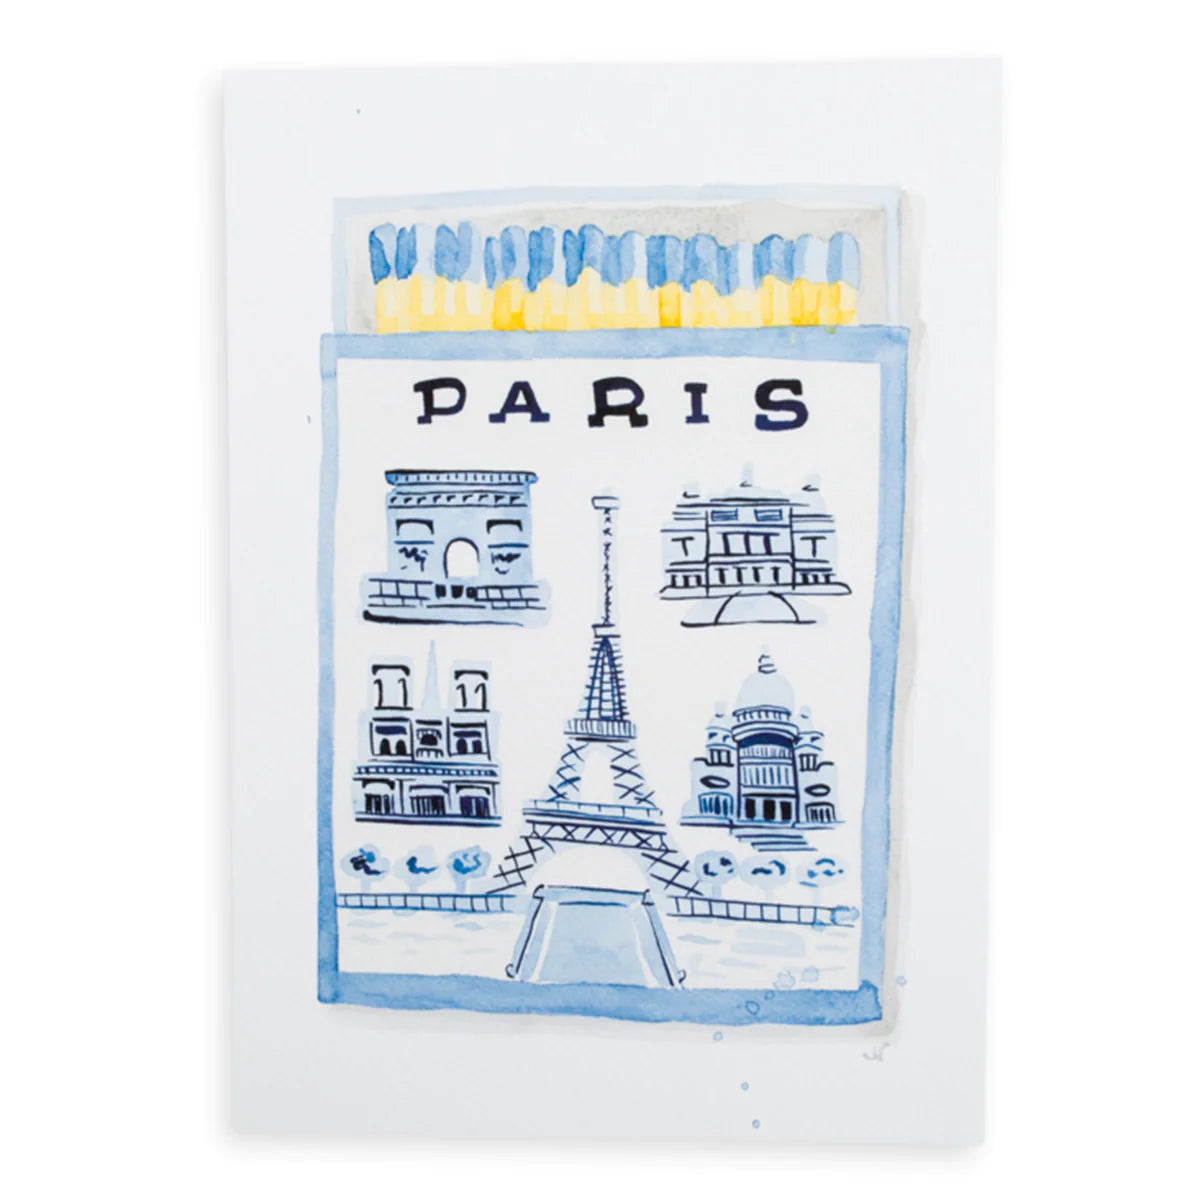 Paris Matchbook